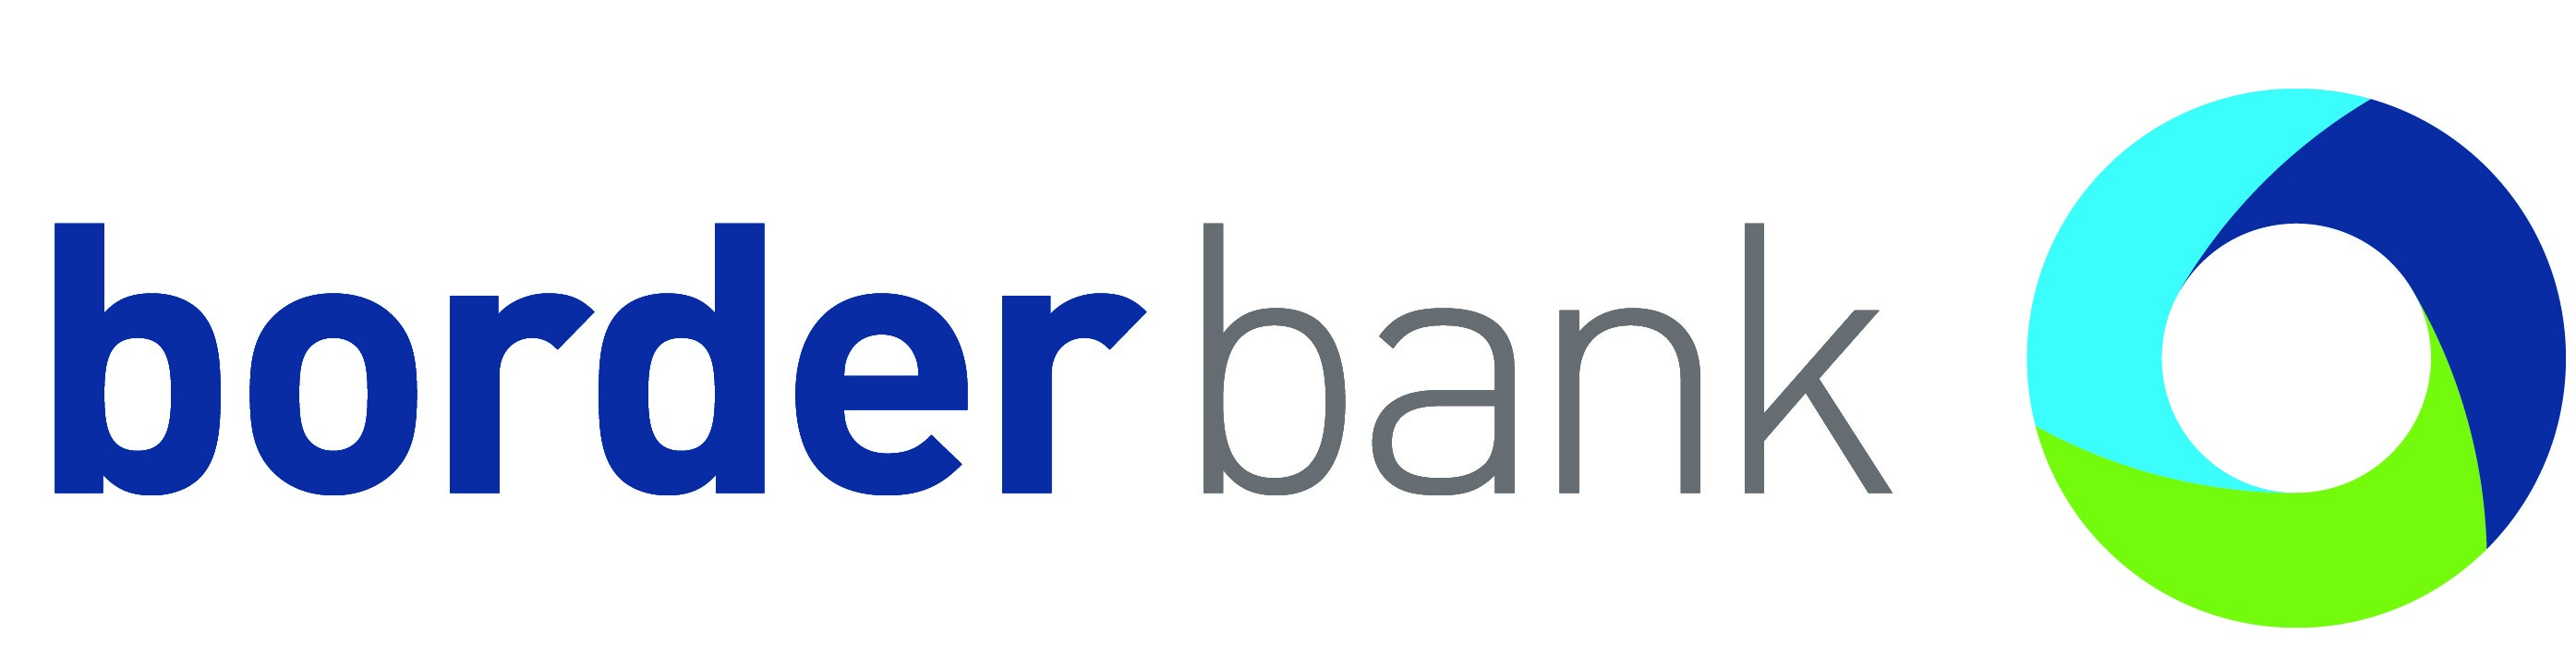 Border Bank logo